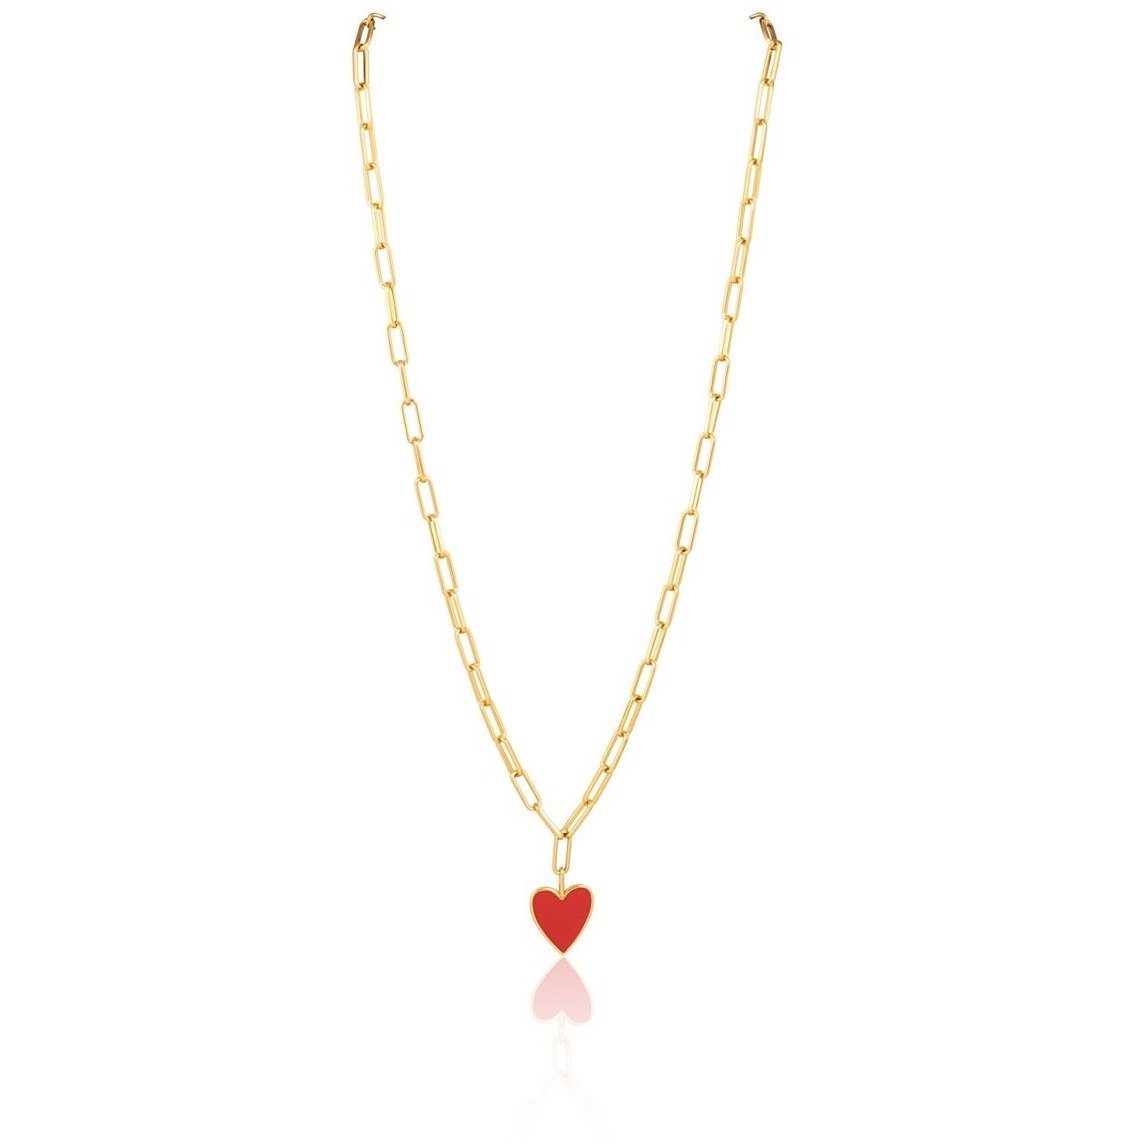 Enamel Heart Charm Necklace - 18k Gold Plated Link, Adjustable 16"-18" Length Bijou Her